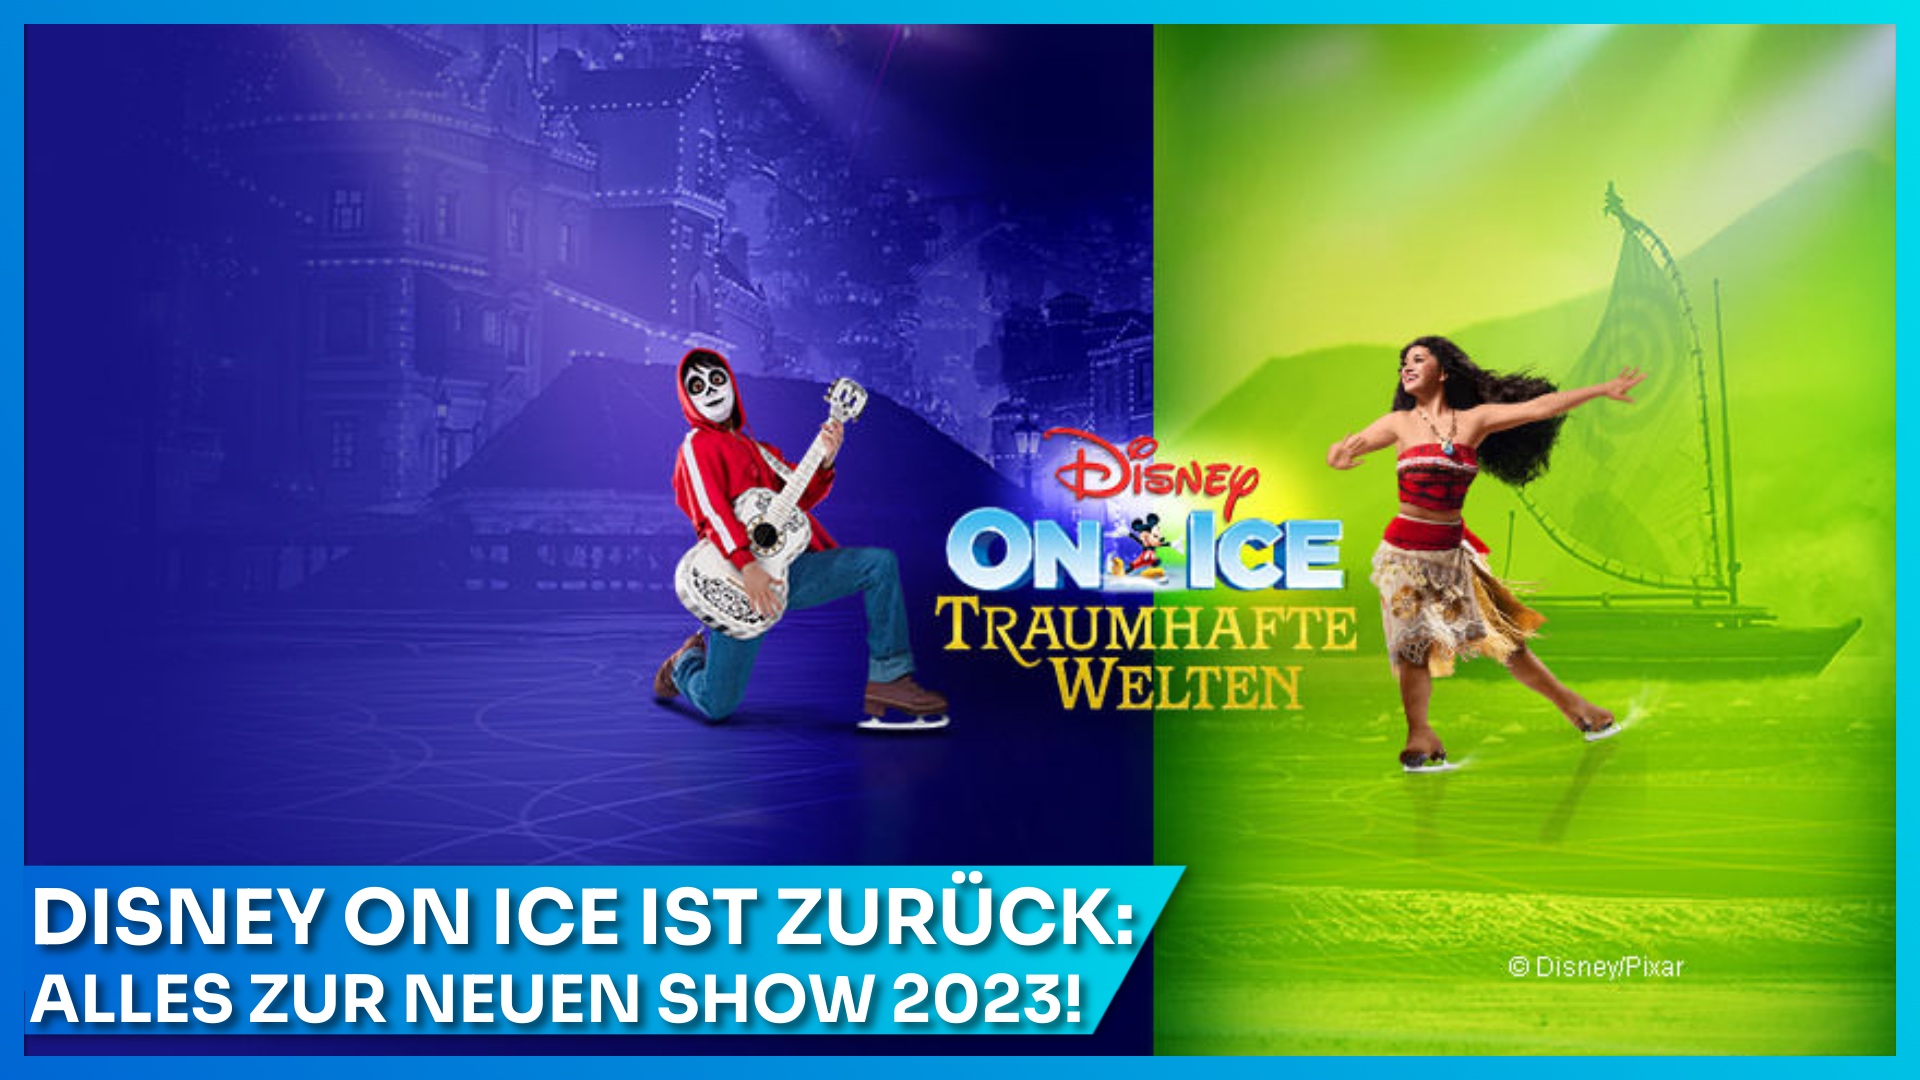 Disney on Ice Traumhafte Welten ab März 2023 in Berlin, Oberhausen, Linz und Frankfurt